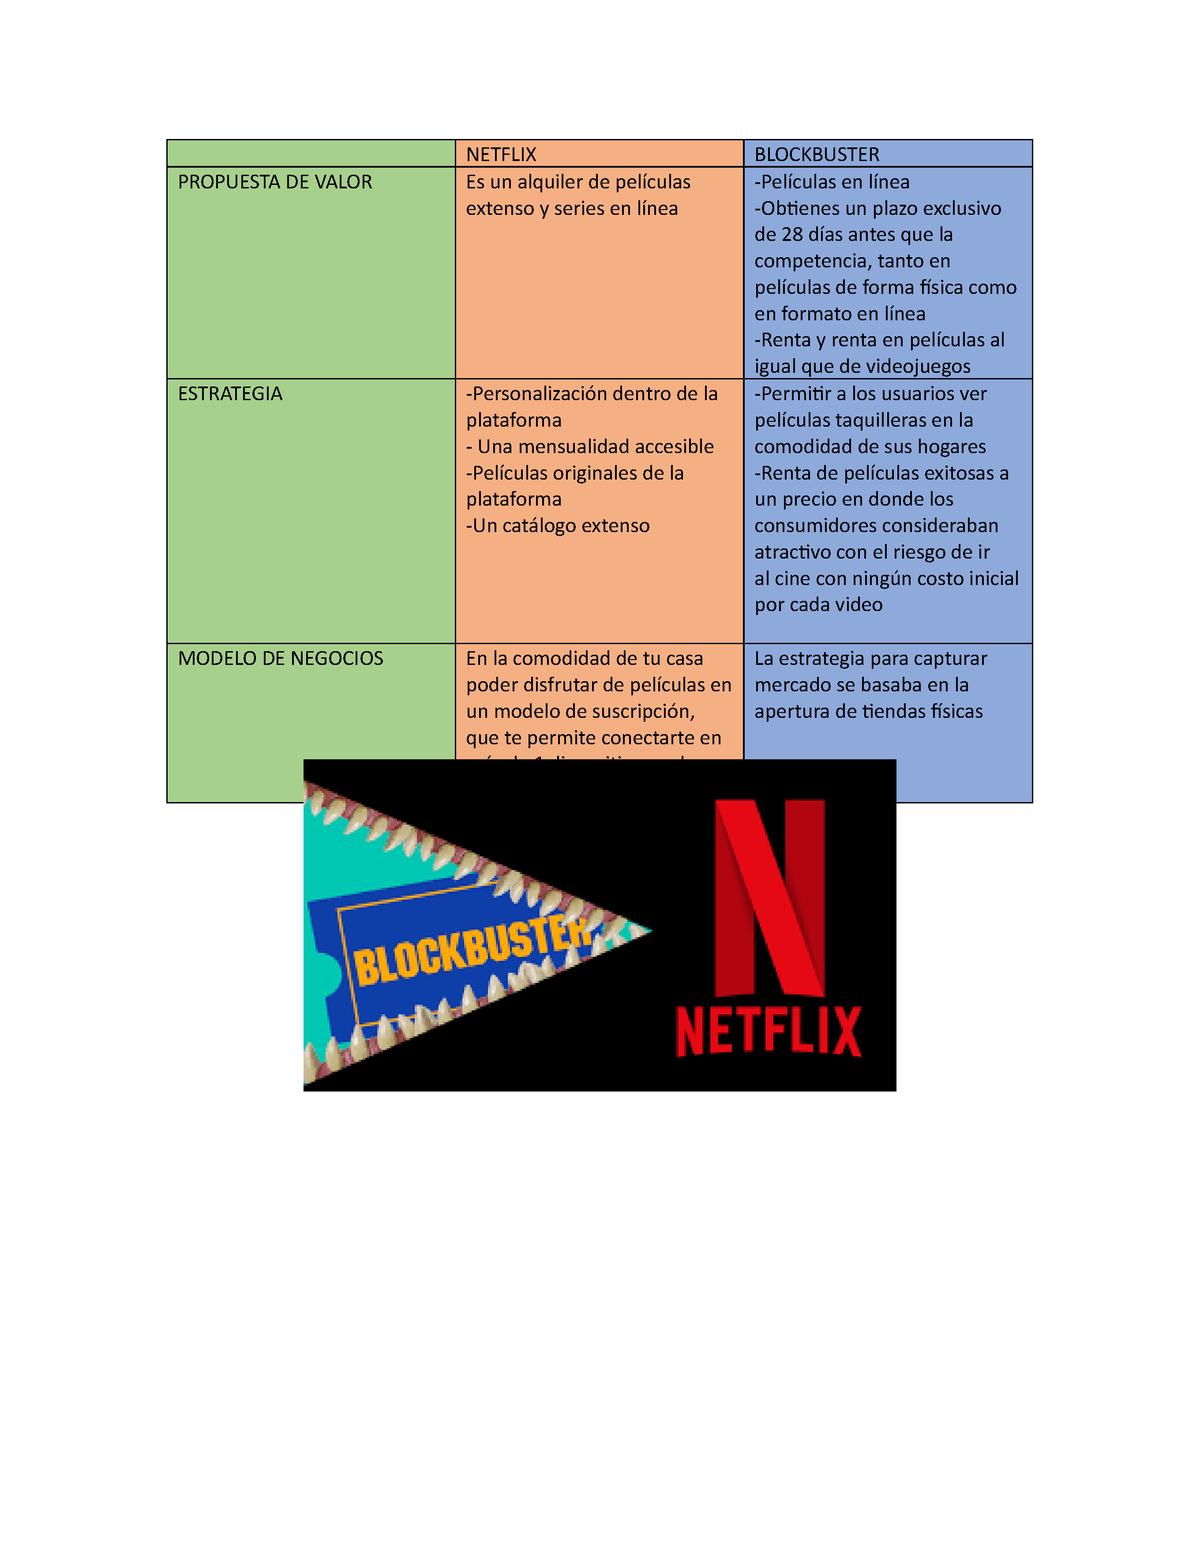 TEMA 1, una comparación sobre el modelo de negocio entre Netflix y  Blockbuster - NETFLIX BLOCKBUSTER - Studocu